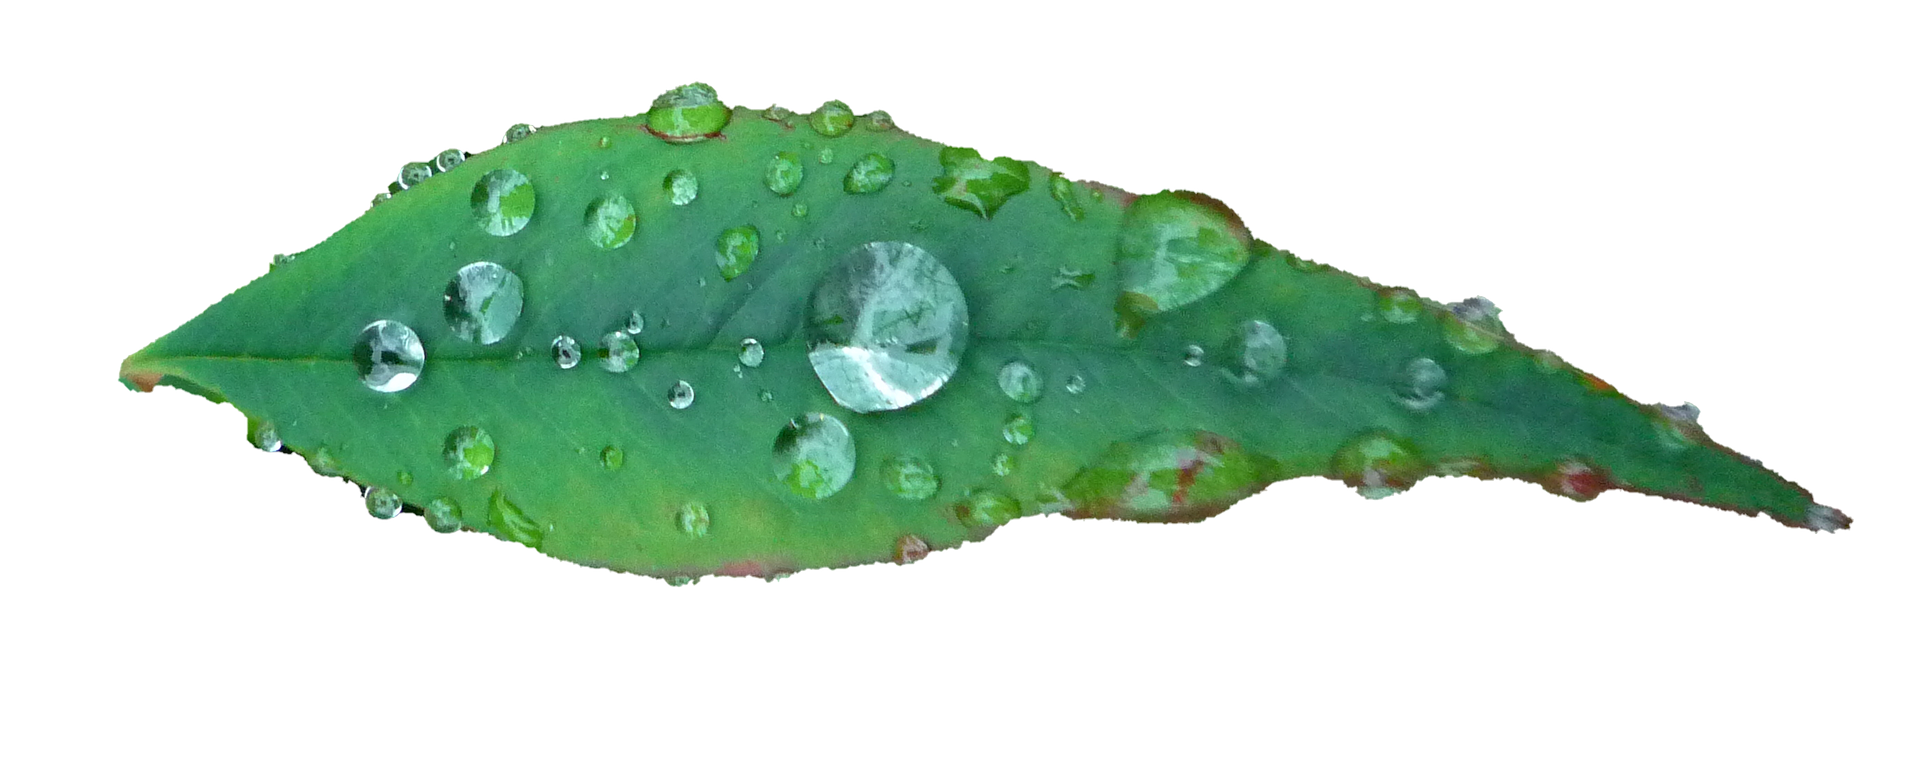 Green Leaf Water Droplets Black Background